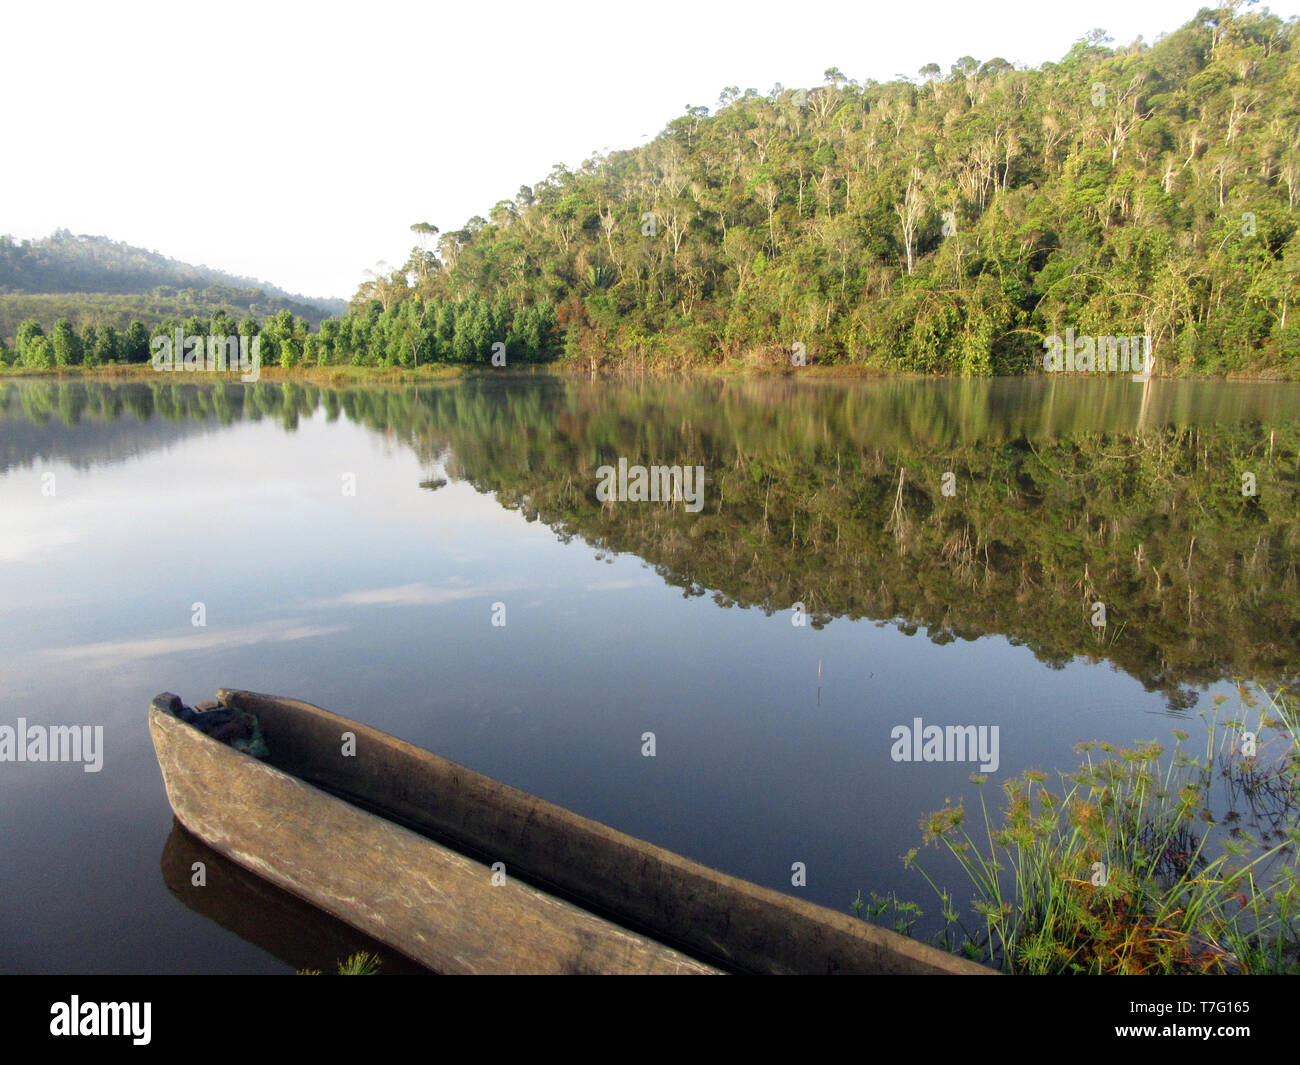 Lake au petit matin près de Parc National Parc Mantadia- Andasibe (Périnet), Madagascar Banque D'Images